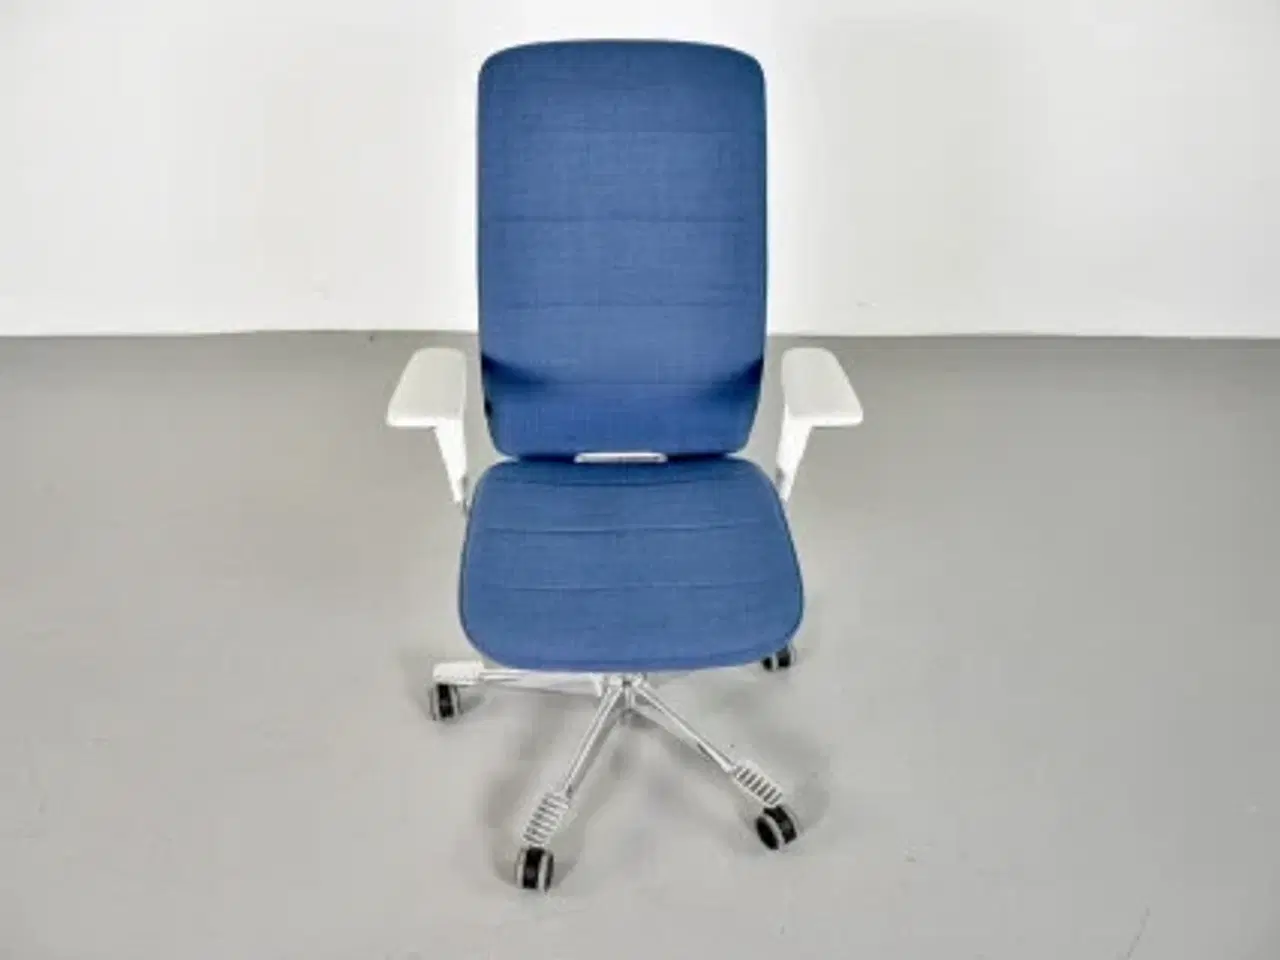 Billede 5 - Kinnarps capella white edition kontorstol med blåt polster og armlæn